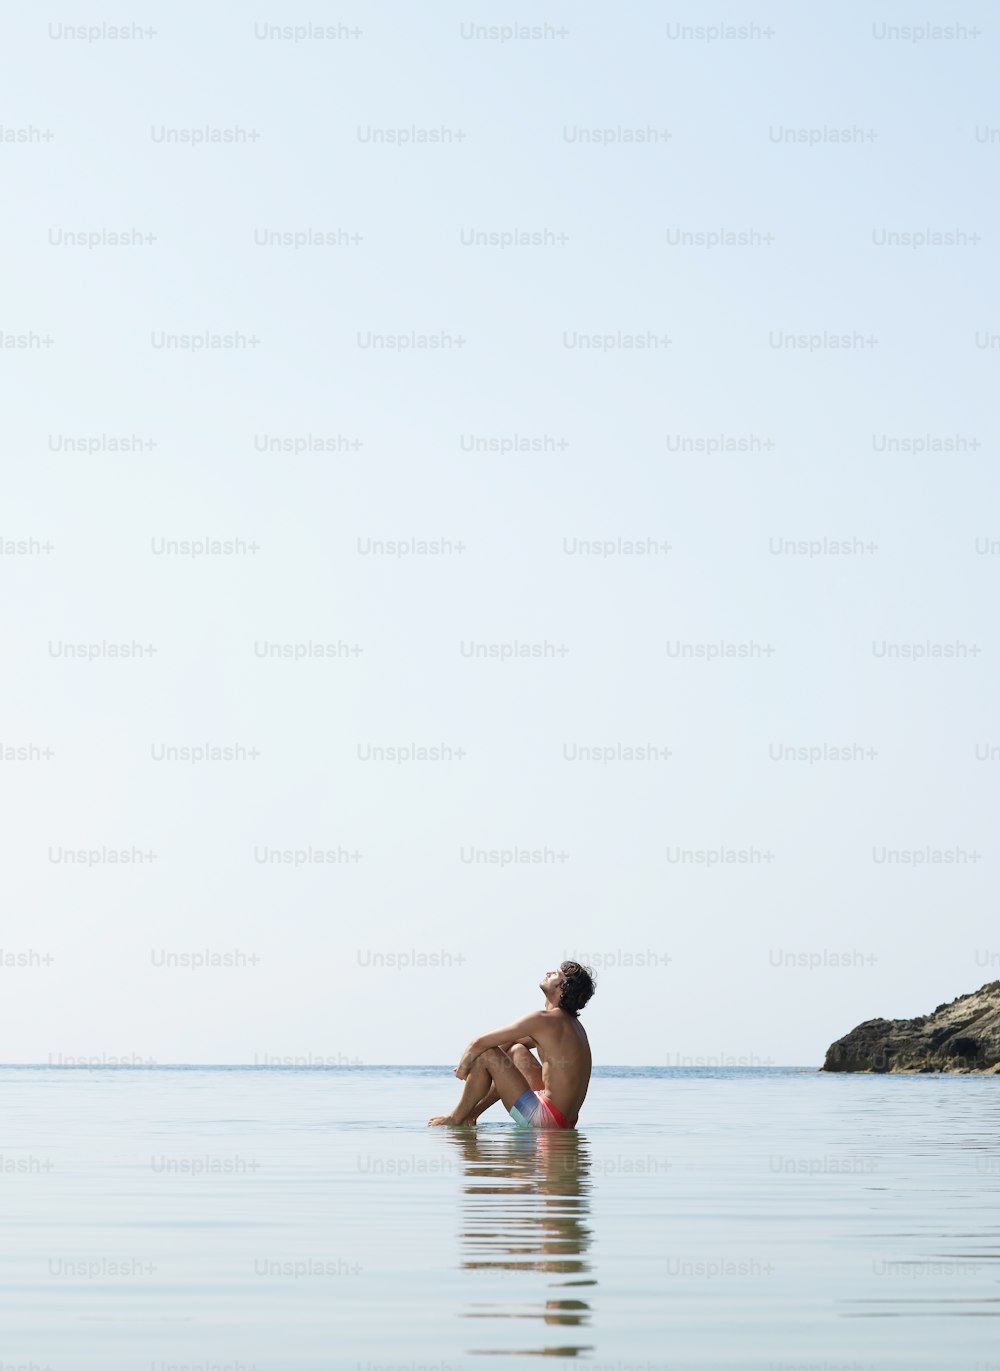 Ein Mann, der auf einem Surfbrett im Meer sitzt